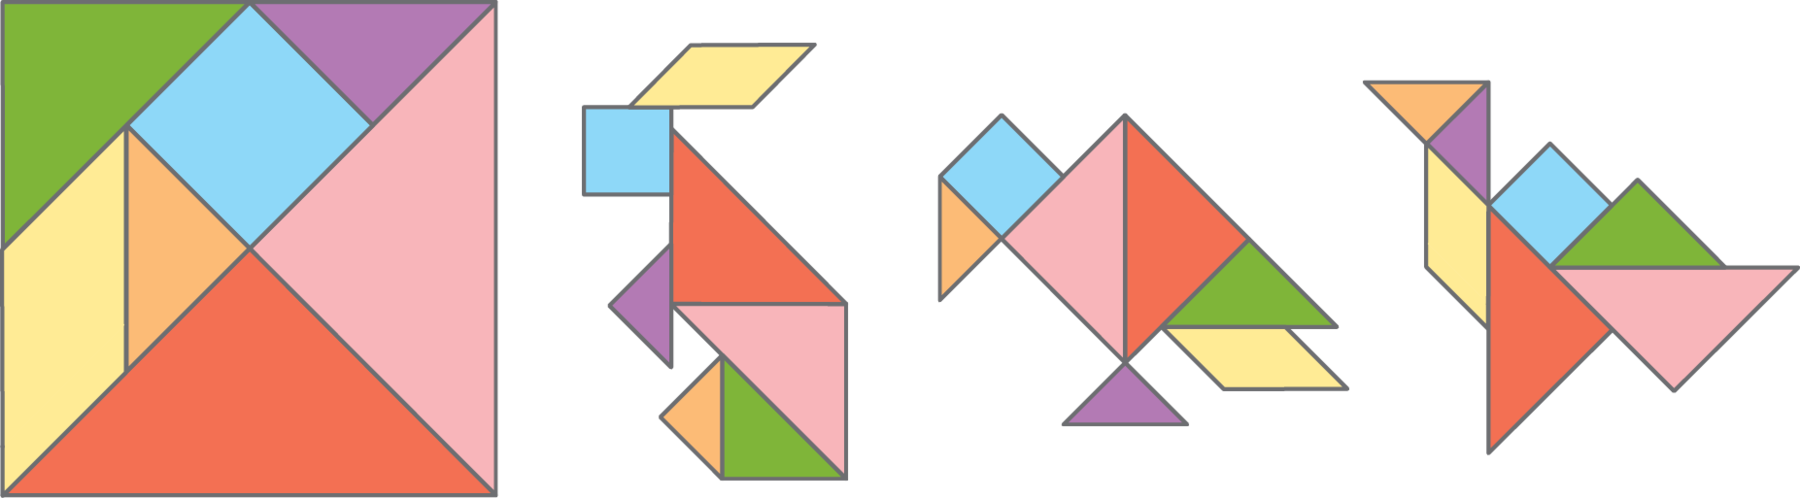 Ilustração. Representação do tangram.
Quadrado formado por peças de Tangram, composto por dois triângulos pequenos, um triângulo médio e dois triângulos grandes, um quadrado e um paralelogramo.

Ilustração. 
Representação com peças do tangram que lembra um coelho sendo composto por: quadrado e paralelogramo na cabeça, triângulos no corpo e patas. 

Ilustração. 
Representação com peças do tangram que lembra um pássaro sendo composto por: quadrado na cabeça, paralelogramo e triângulo médio na cauda, triângulos maiores no corpo e triângulos pequenos na pata e bico. 

Ilustração. 
Representação com peças do tangram que lembra um pássaro sendo composto por: triângulos menores na cabeça, paralelogramo no pescoço, triângulos maiores no corpo e cauda, quadrado e triângulo médio na asa.